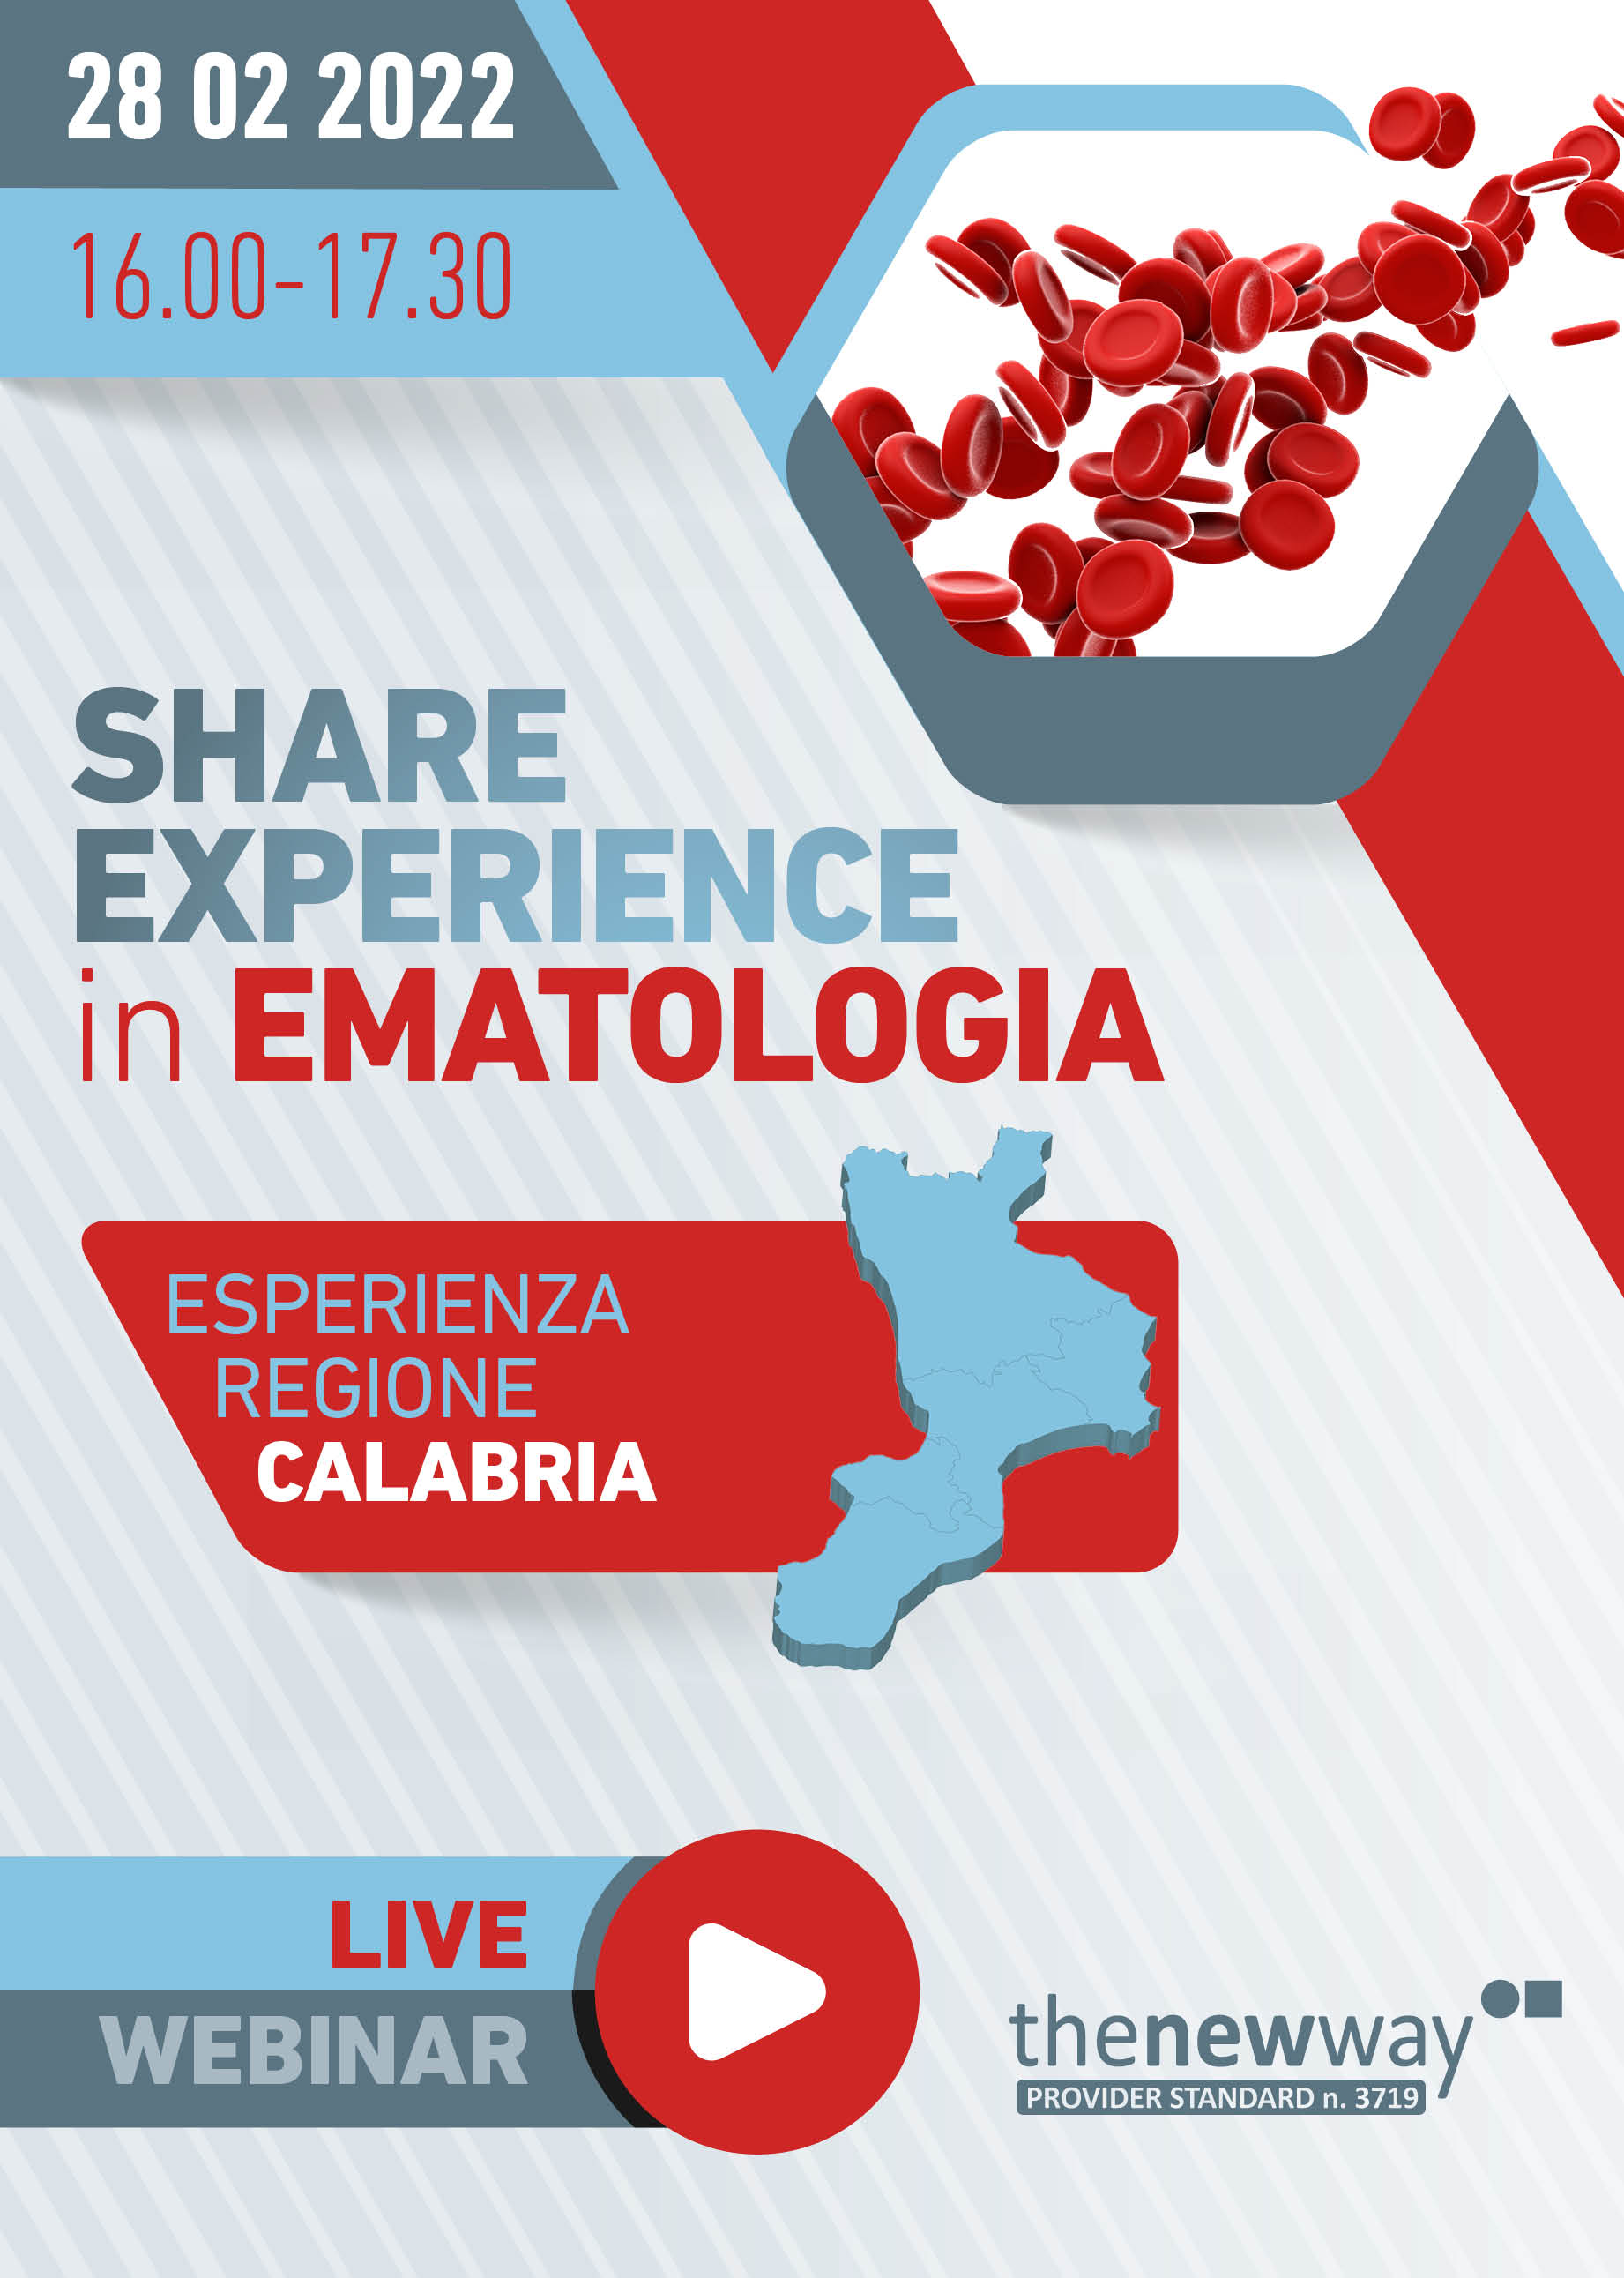 SHARE EXPERIENCE IN EMATOLOGIA - Milano, 28 Febbraio 2022